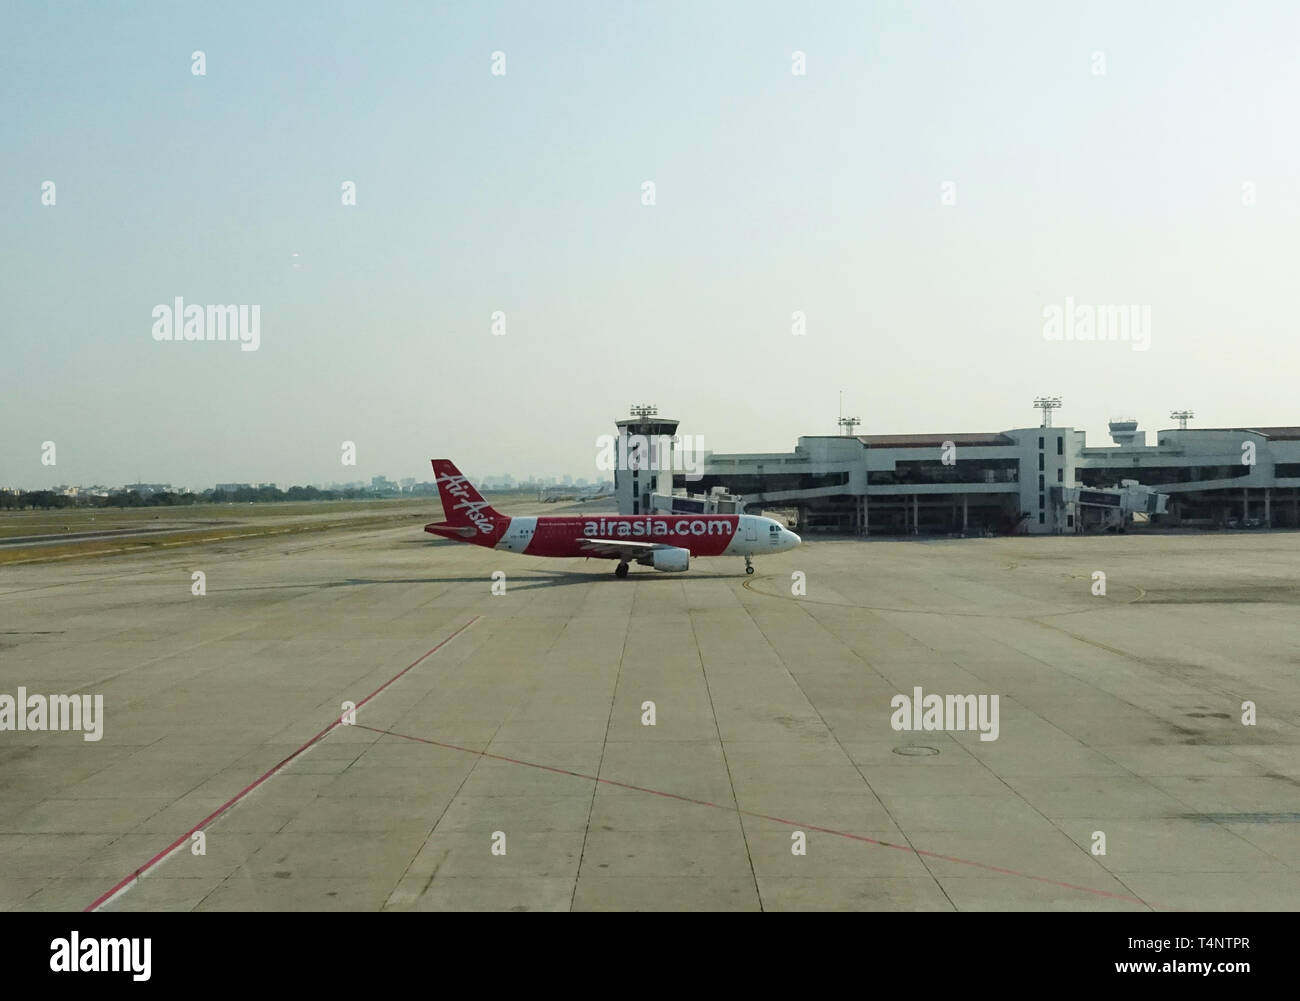 Flugzeuge der AirAsia, einer der wichtigsten Low Cost Airline in Asien, auf ein Taxi zu einem Terminal immer bereit für den nächsten Flug. Stockfoto